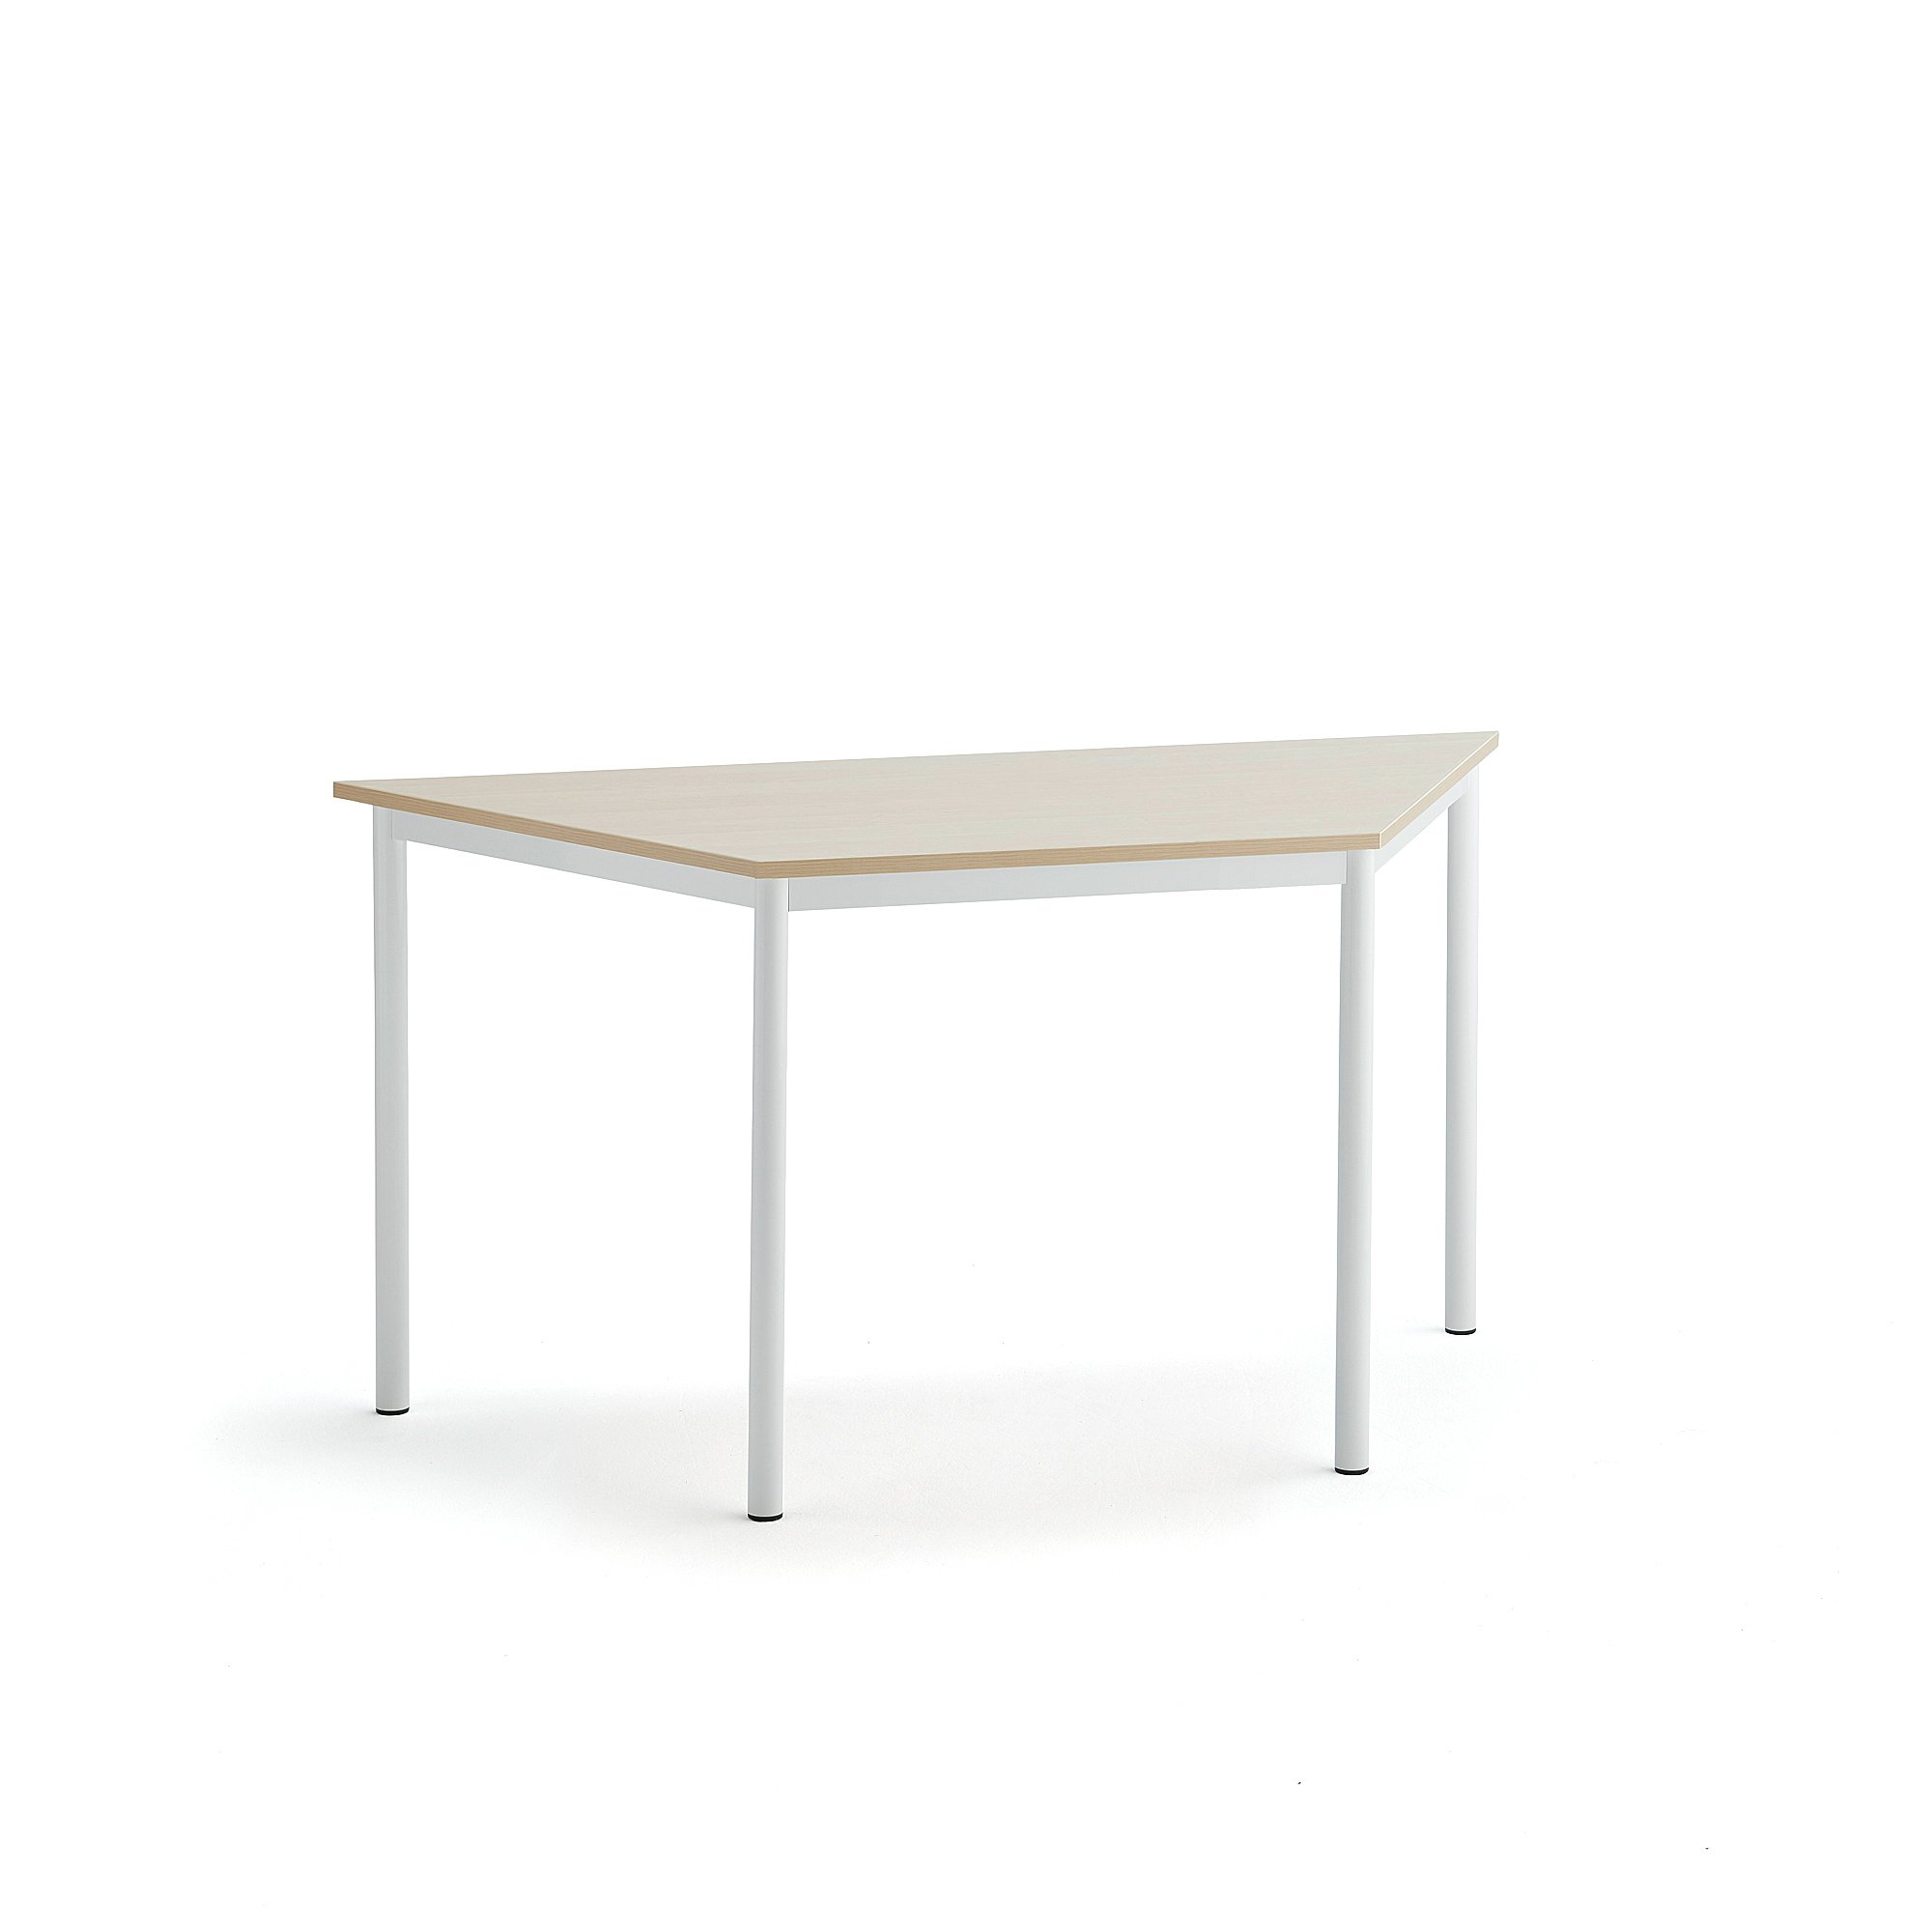 Stůl SONITUS TRAPETS, 1400x700x720 mm, bílé nohy, HPL deska tlumící hluk, bříza